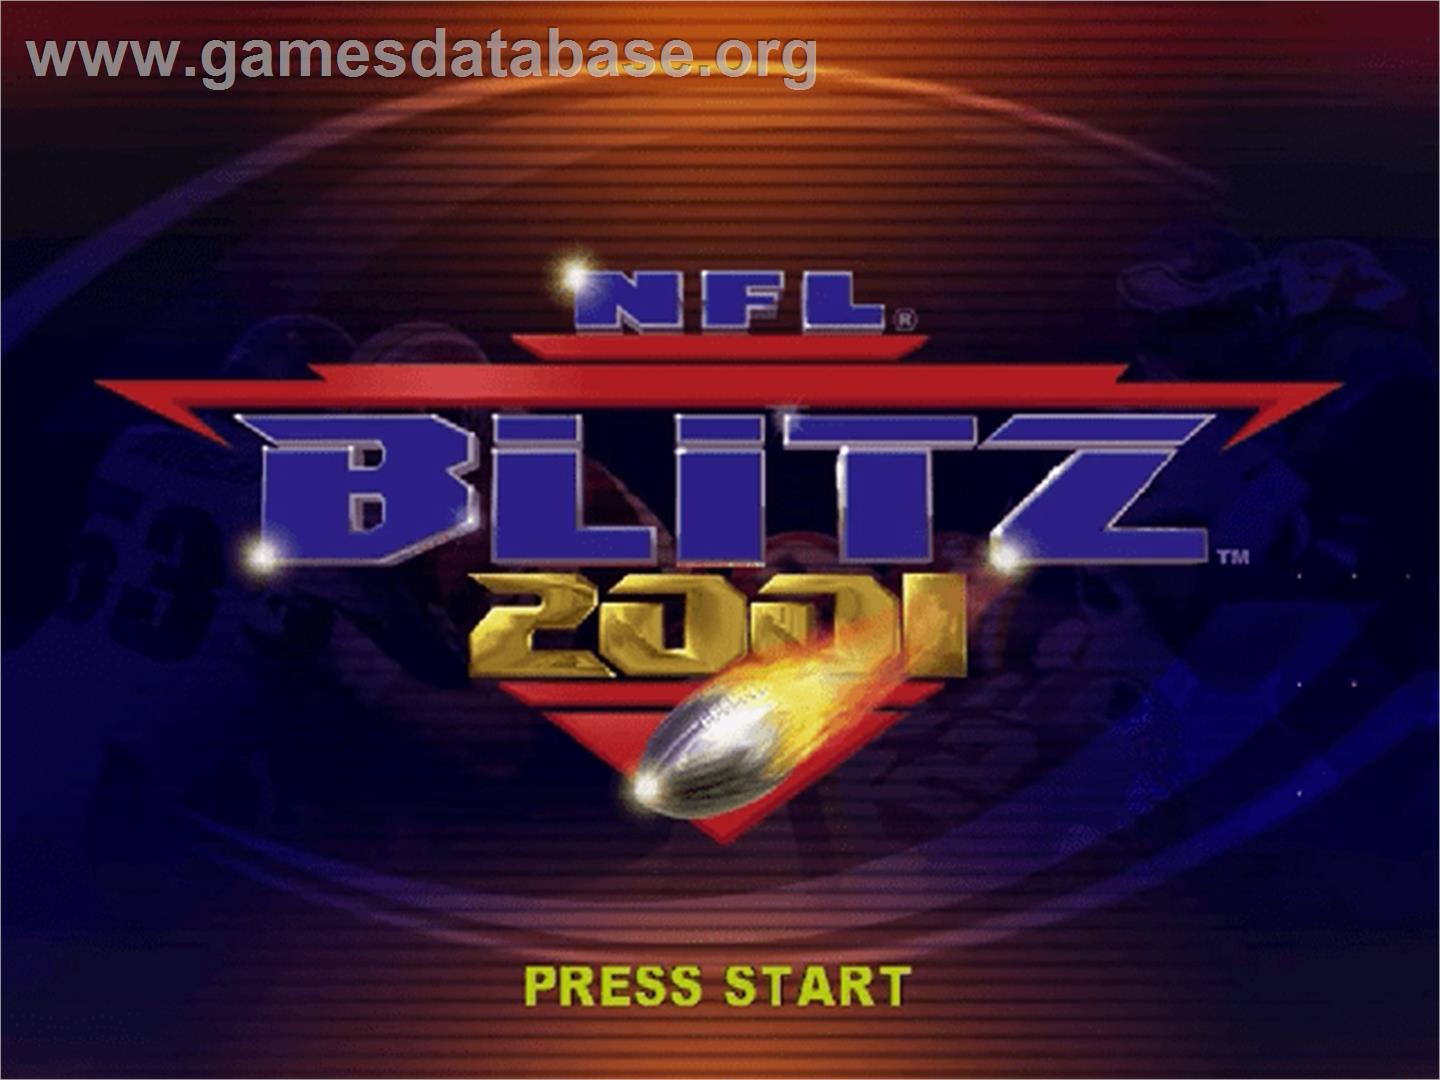 NFL Blitz 2001 - Sega Dreamcast - Artwork - Title Screen